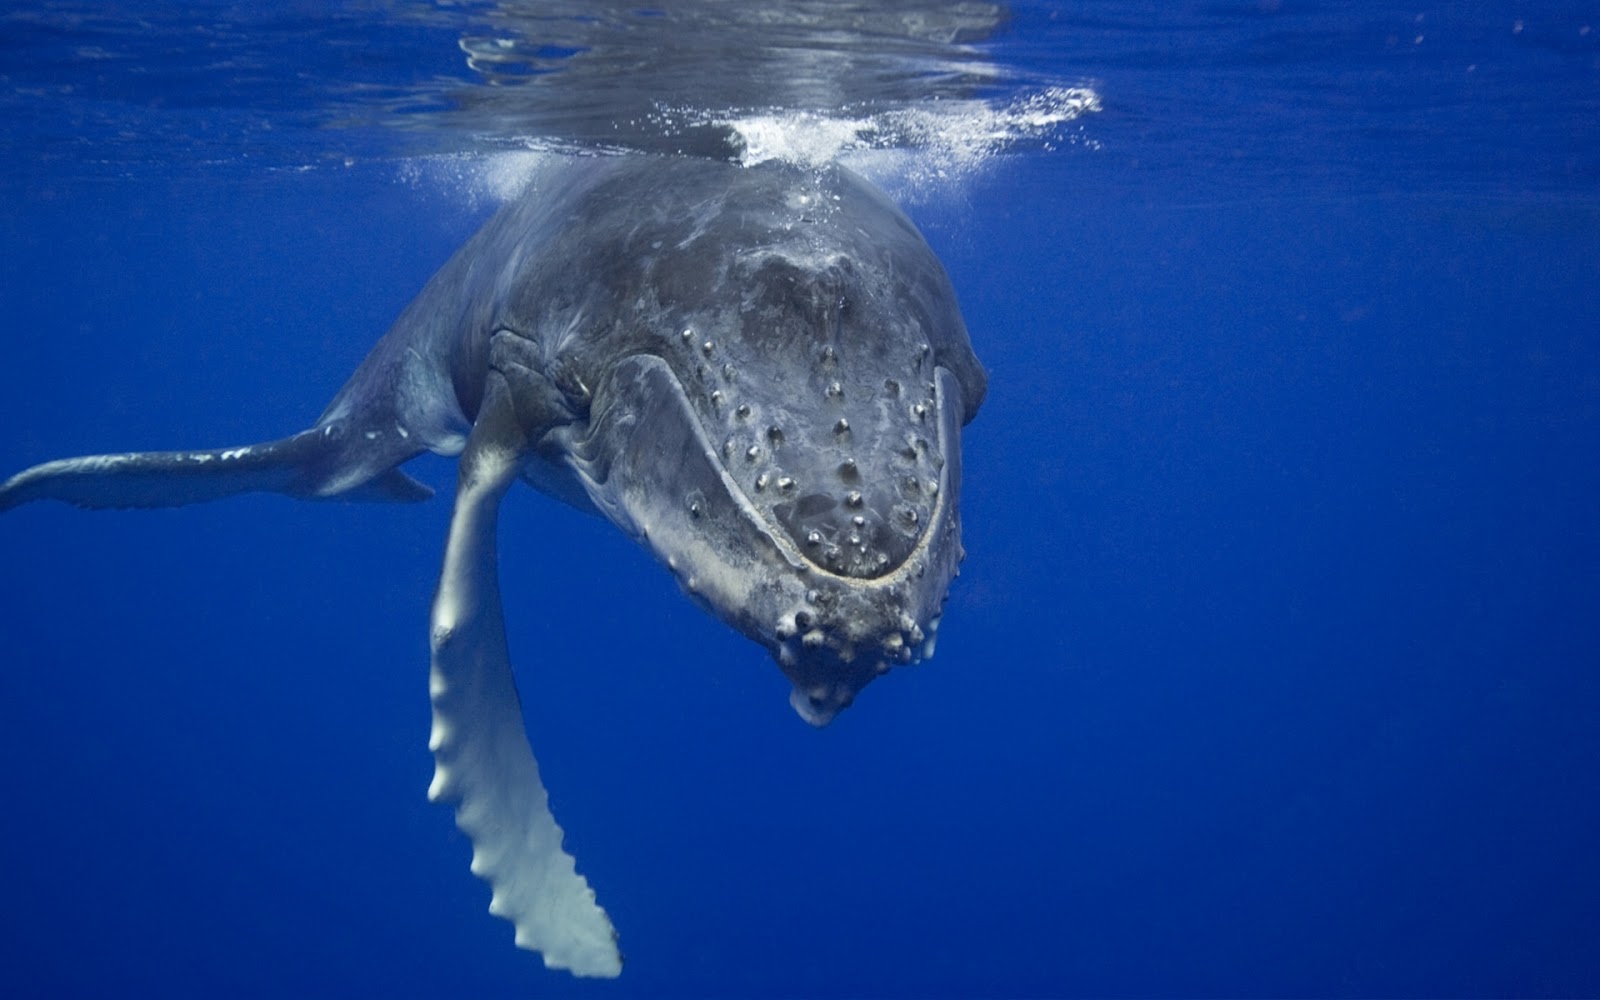 balena blu wallpaper hd,mammifero marino,acqua,biologia marina,delfino di tursiope comune,megattera